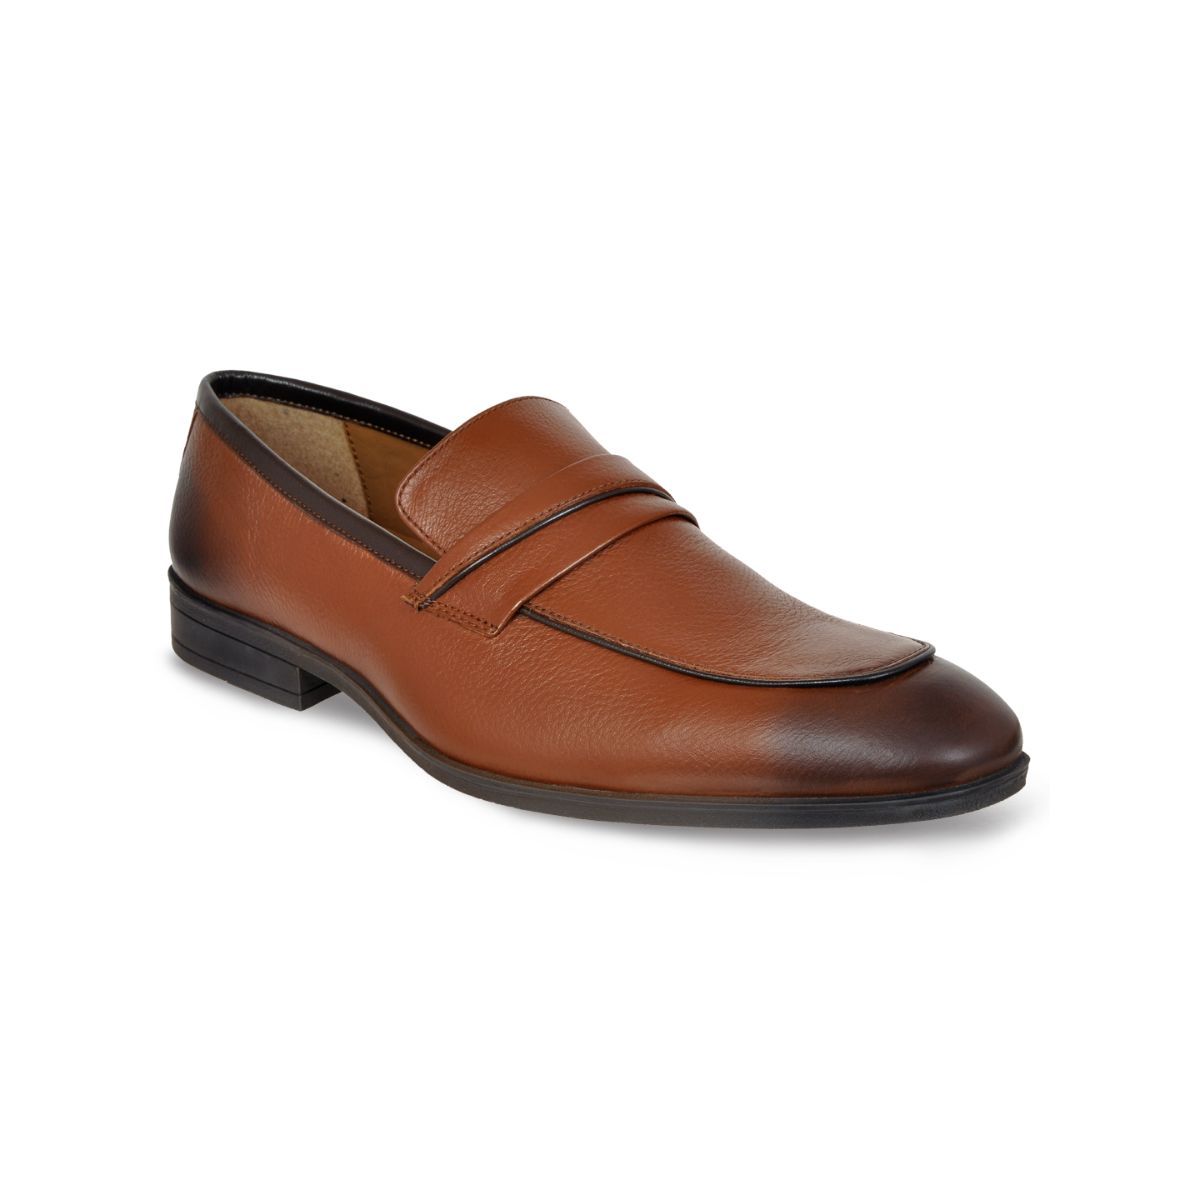 Allen Cooper Tan Formal Loafers Shoes For Men - 10